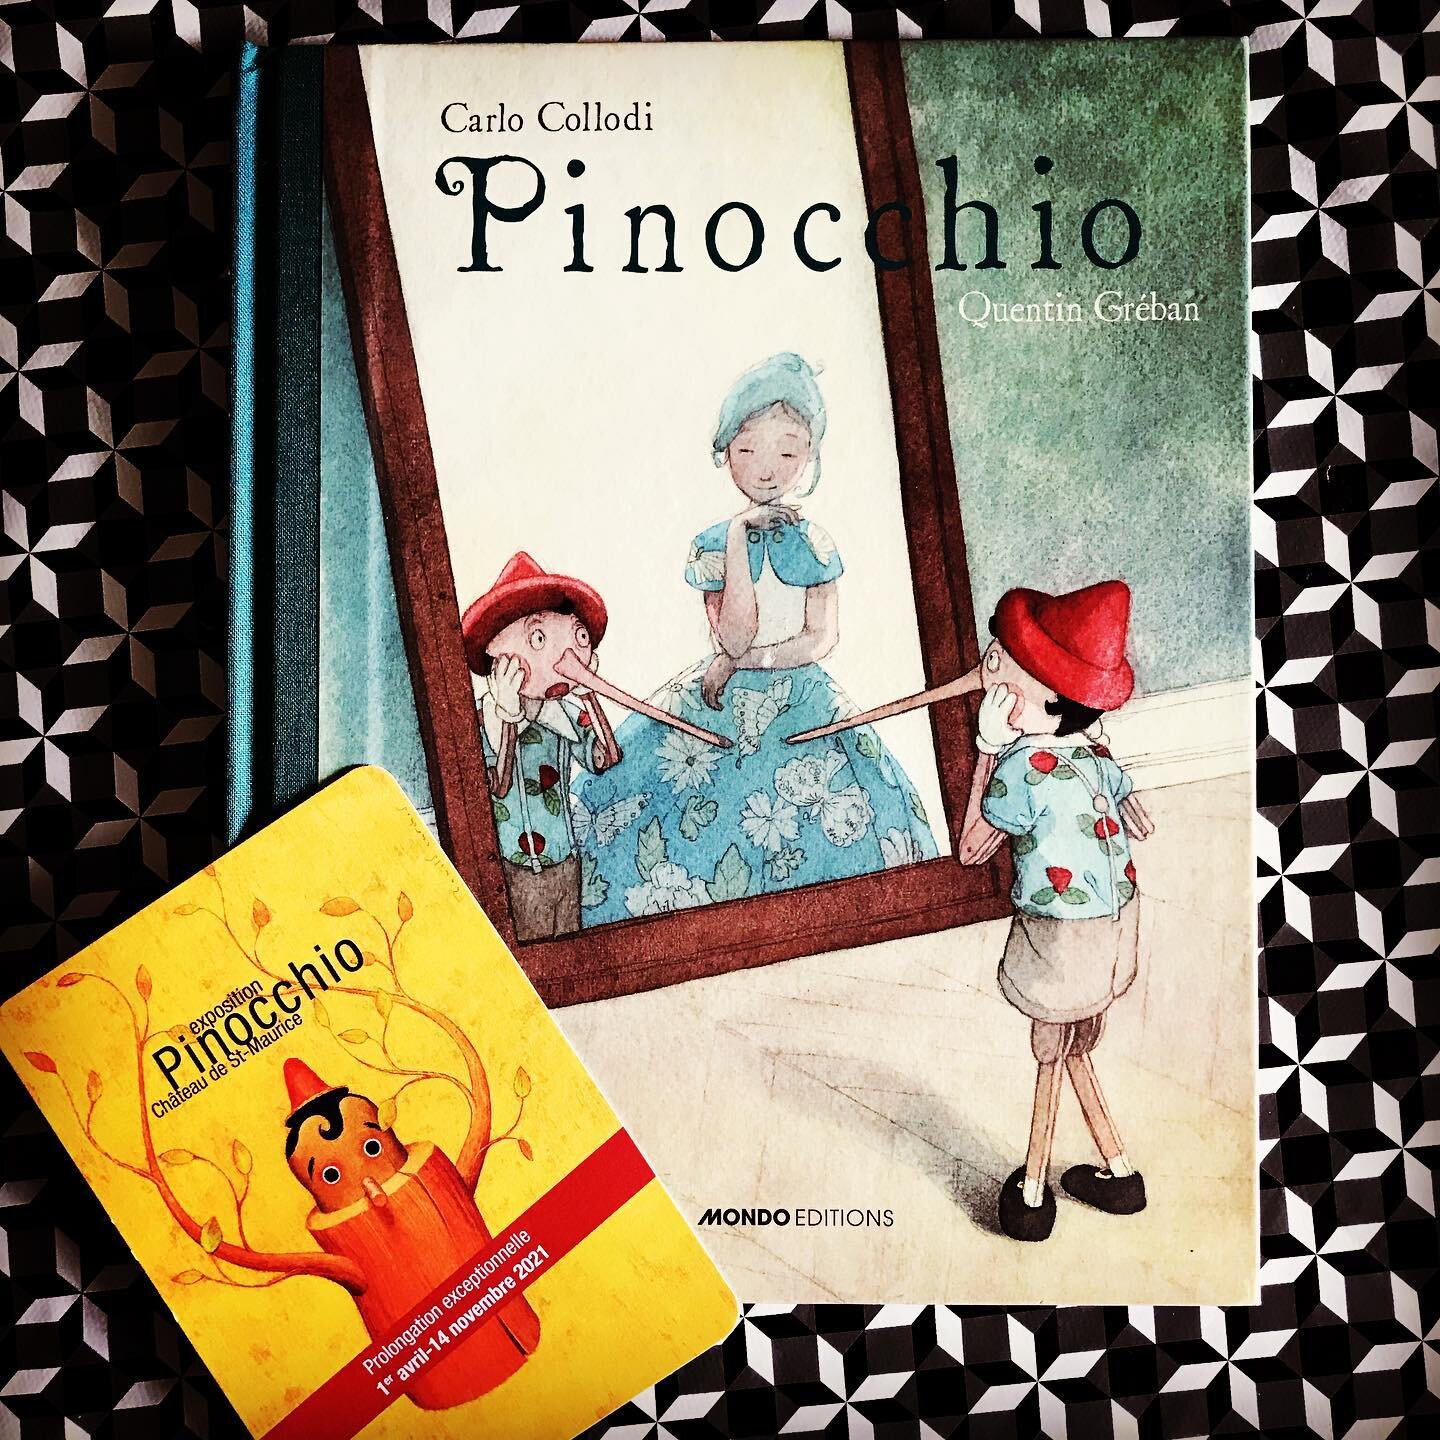 Pinocchio, un livre italien de la fin du XIXe si&egrave;cle qui ne cesse d'habiter nos imaginaires et d'enchanter ou terroriser nos enfants en leur rappelant l'importance de l'&eacute;cole et de l'amour parental.

A d&eacute;couvrir jusqu'au 15 novem